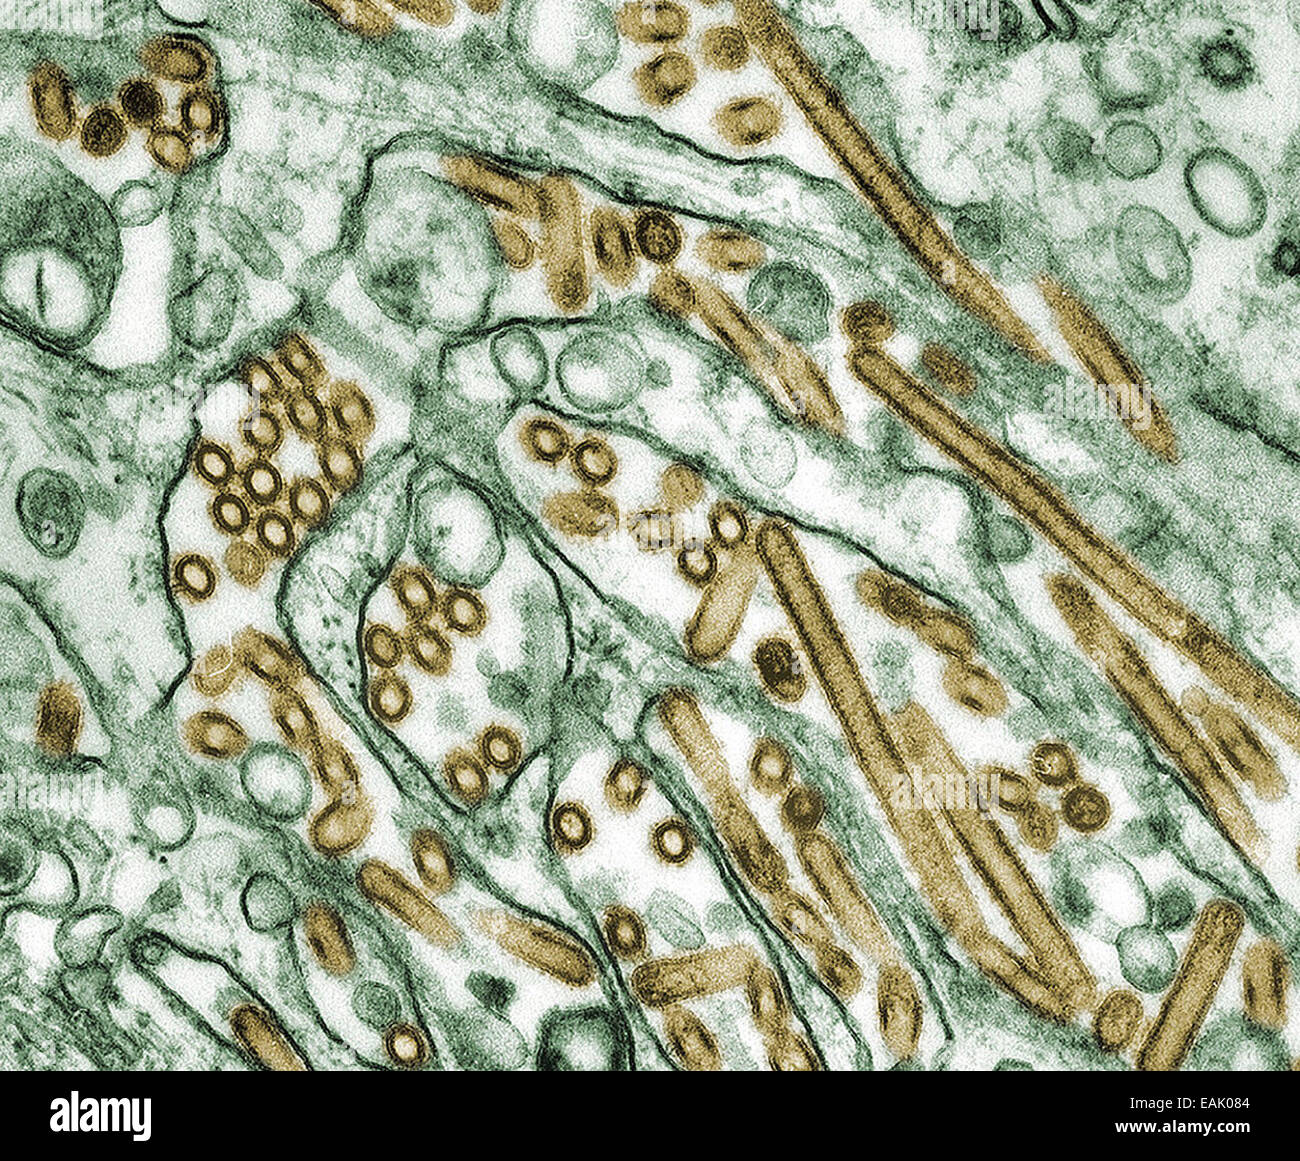 Colorizzato micrografia elettronica a trasmissione dell'influenza aviaria H5N1 virus. I fornitori di contenuti: CDC/ cortesia di Cynthia Goldsm Foto Stock